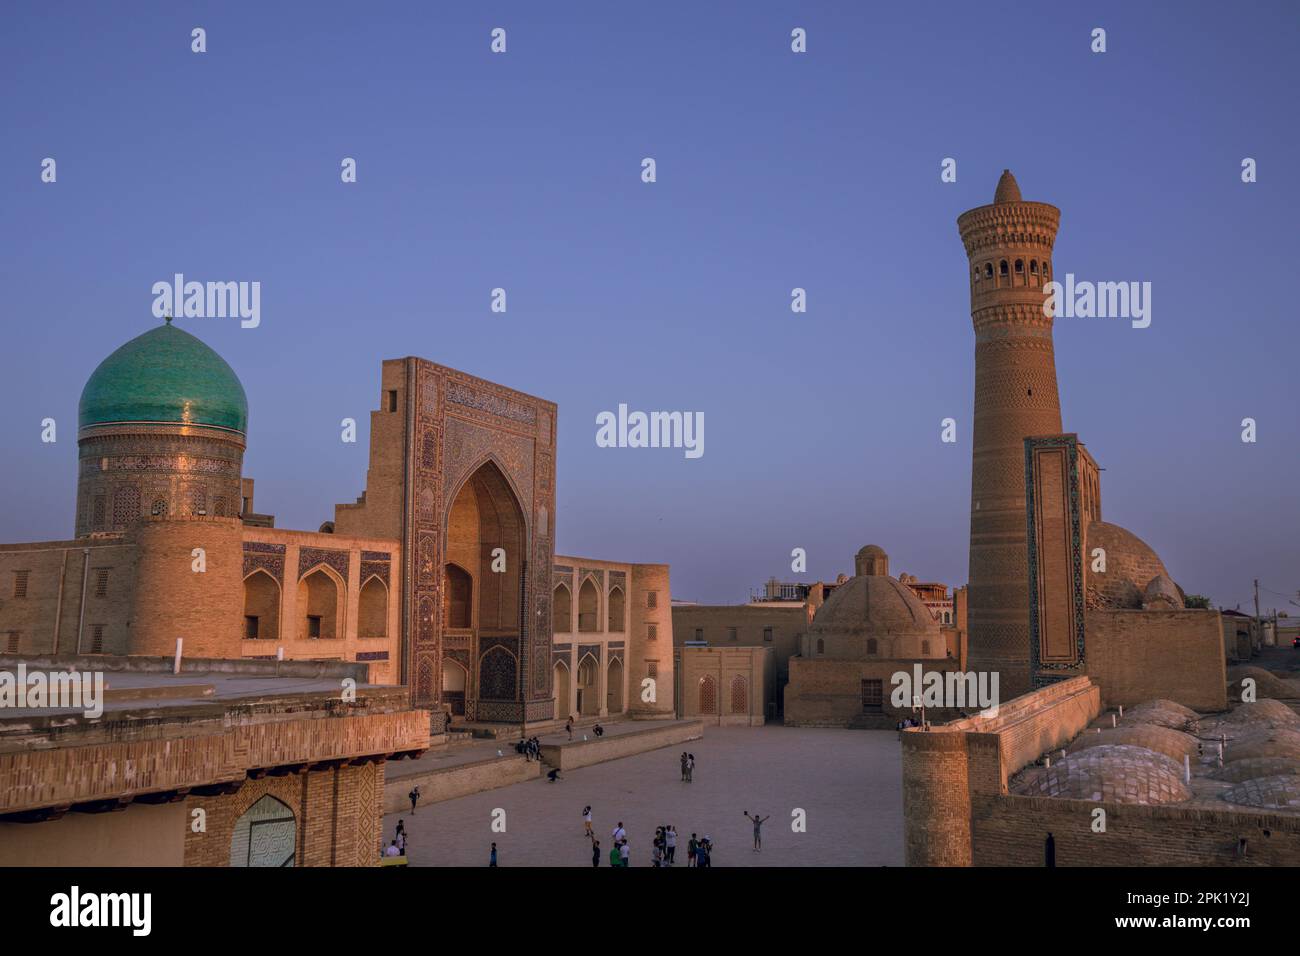 Tramonto e architettura persiana nell'antica città di Bukhara, Uzbekistan, complesso religioso islamico po-i-Kalan, moschea calica Foto Stock